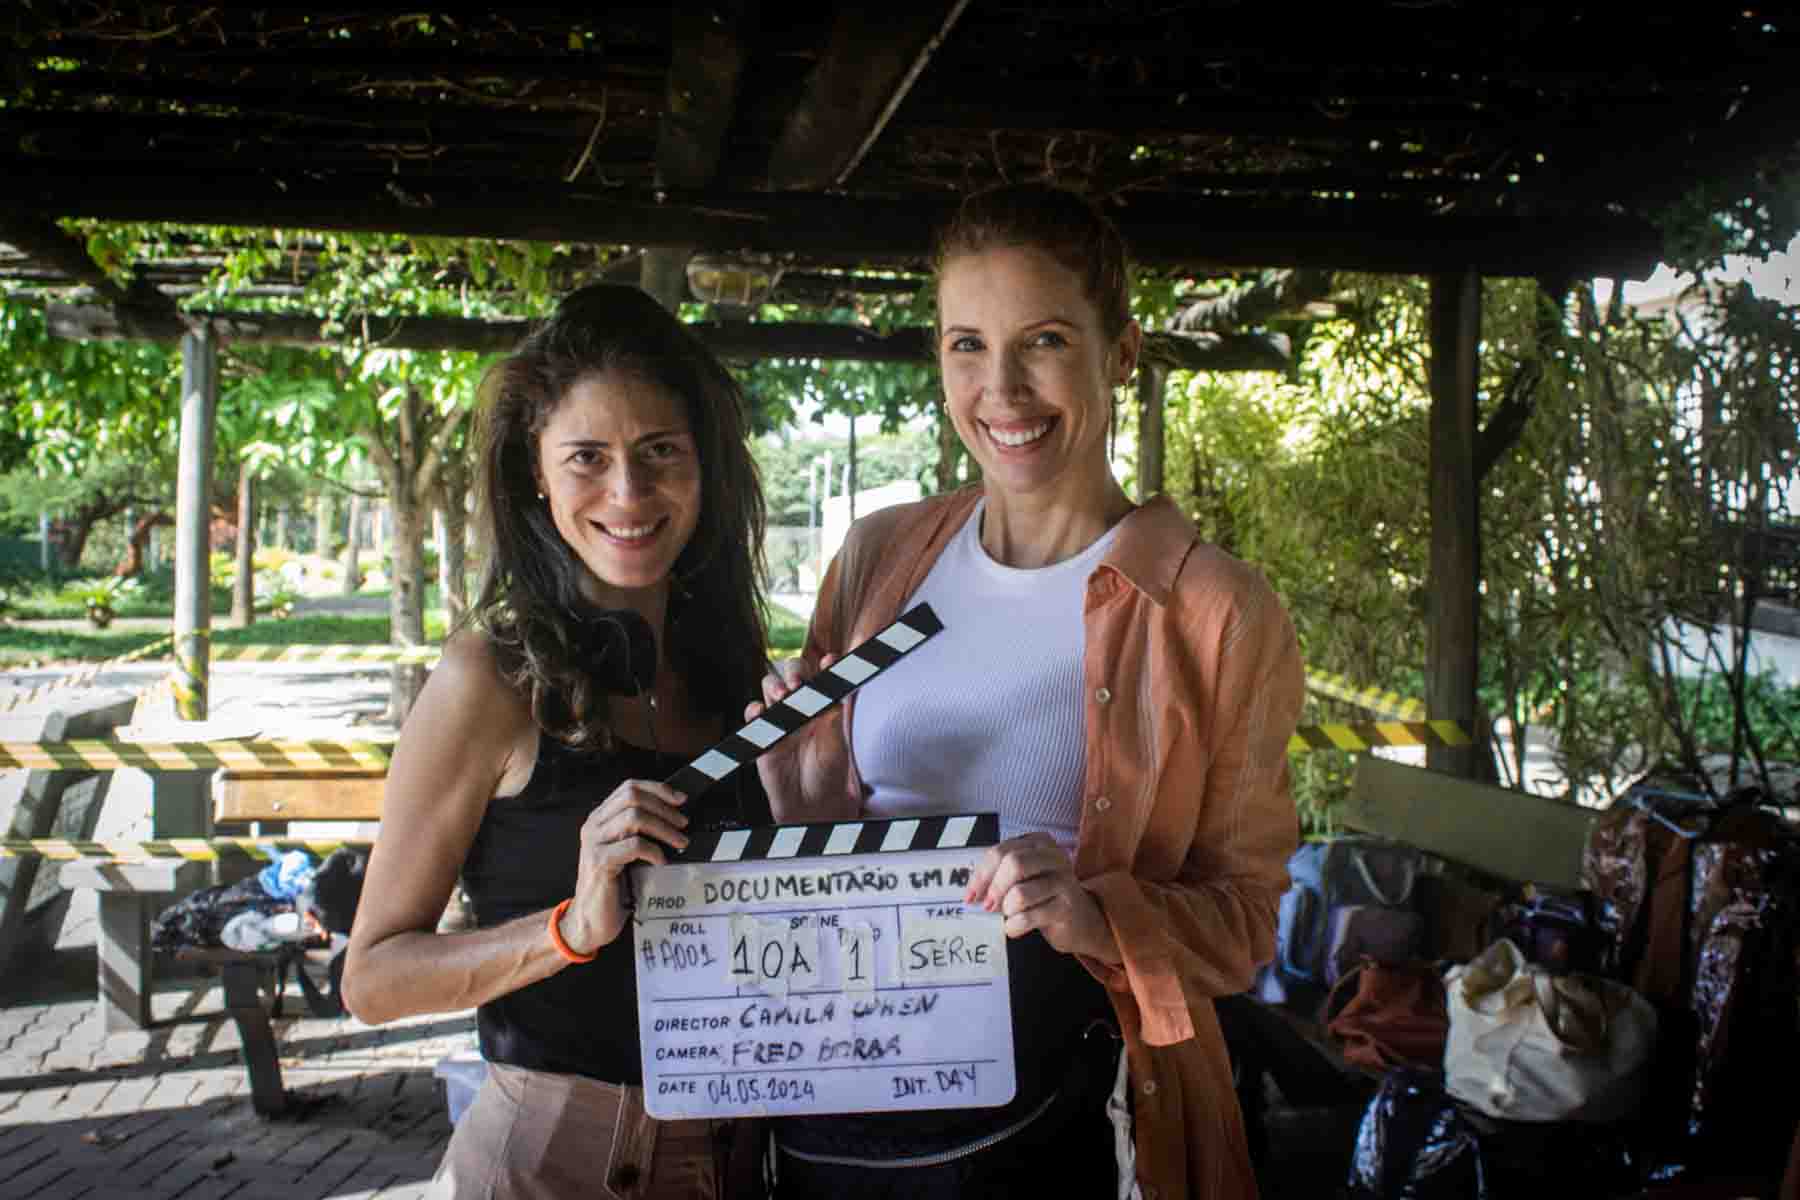 Diretora Camila Cohen e atriz Josi Larger em Documentário em Abismo - Crédito Pablo Siviero